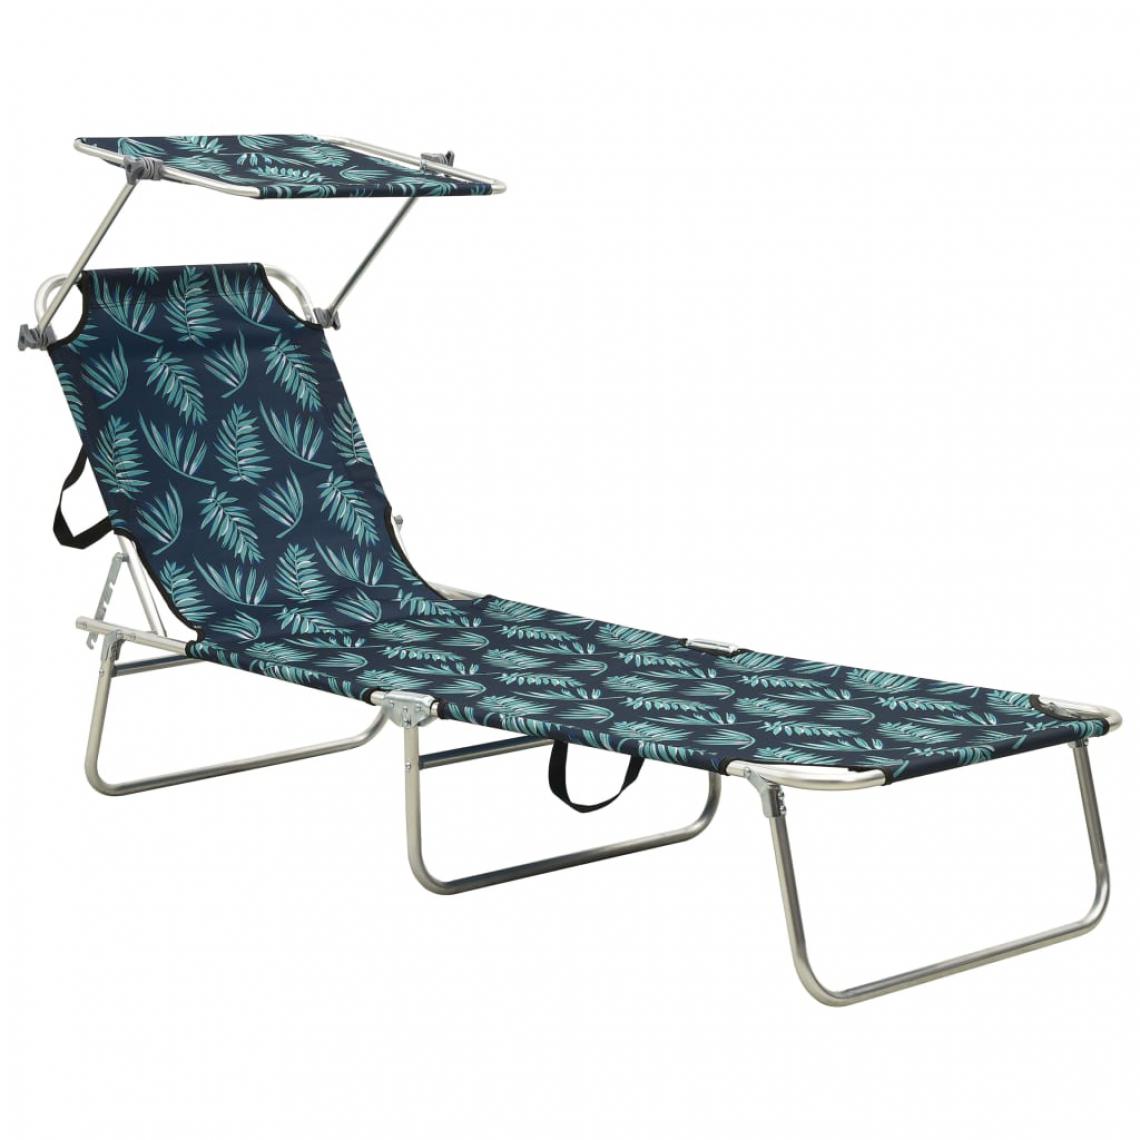 Vidaxl - vidaXL Chaise longue pliable avec auvent Motif de feuilles Aluminium - Transats, chaises longues